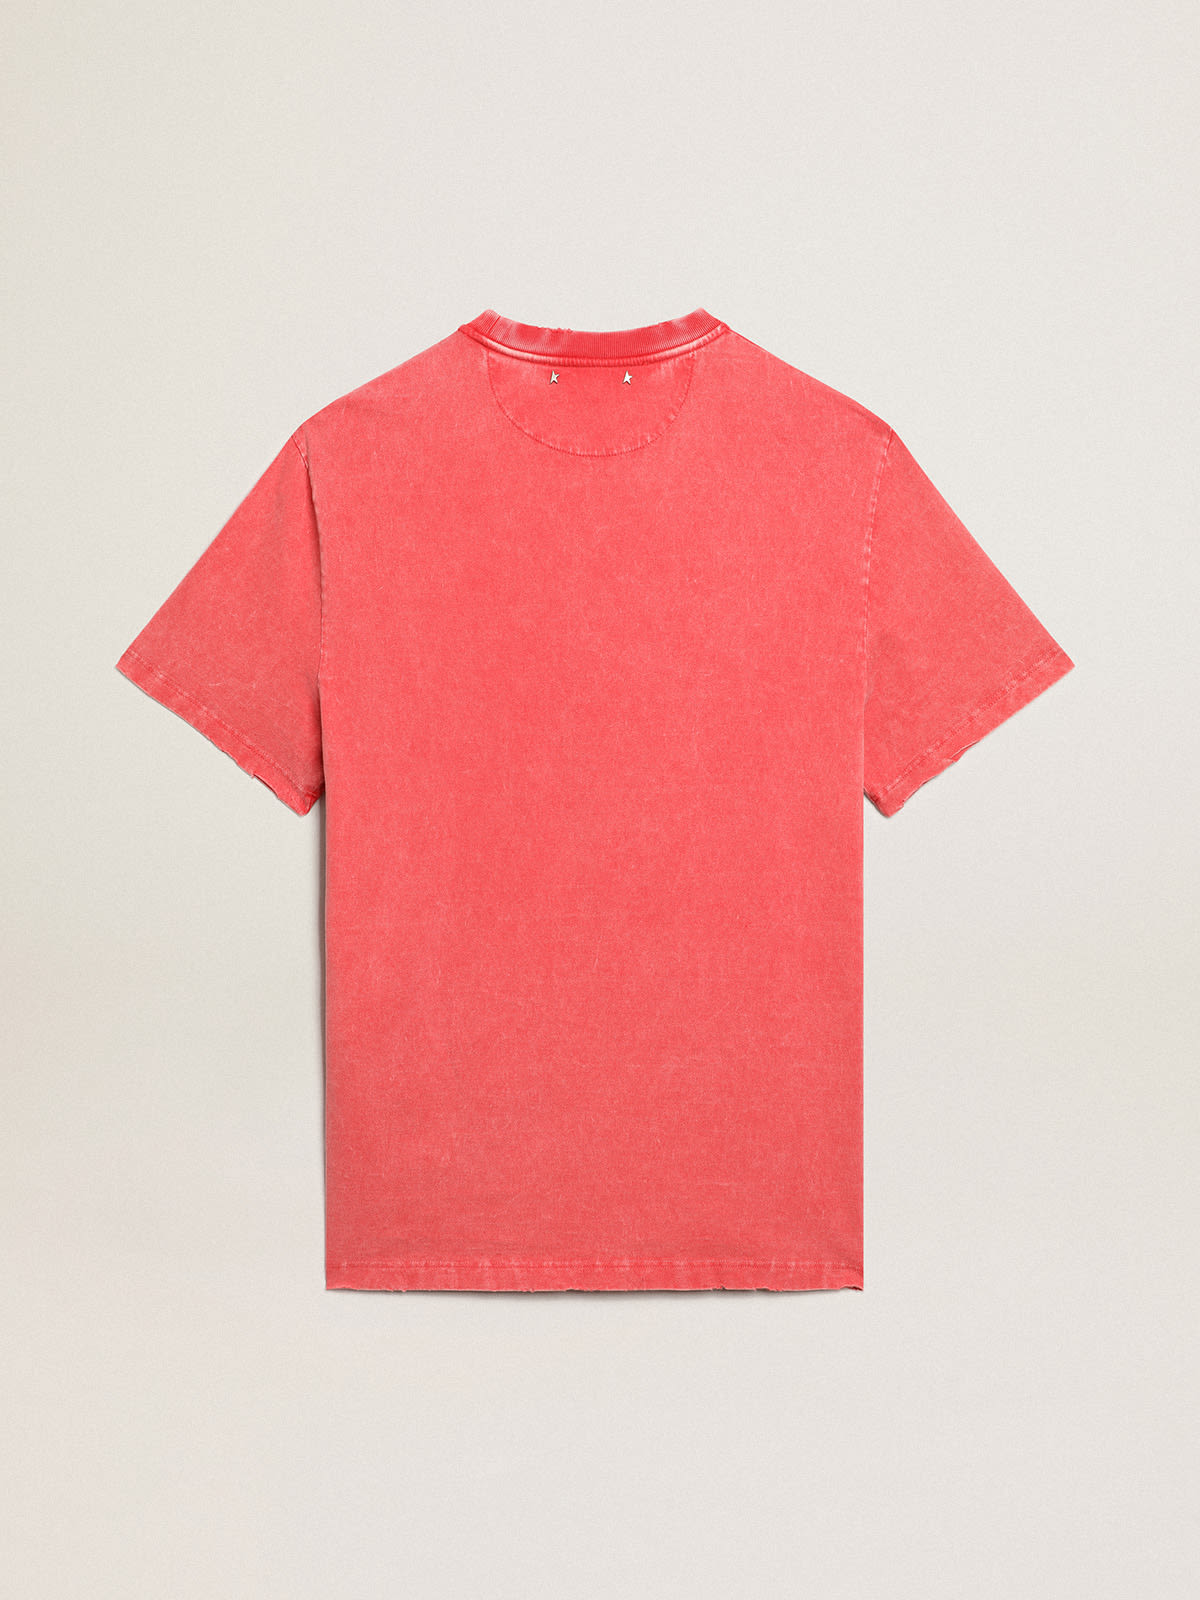 Golden Goose - T-shirt rouge avec inscription imprimée écrue in 